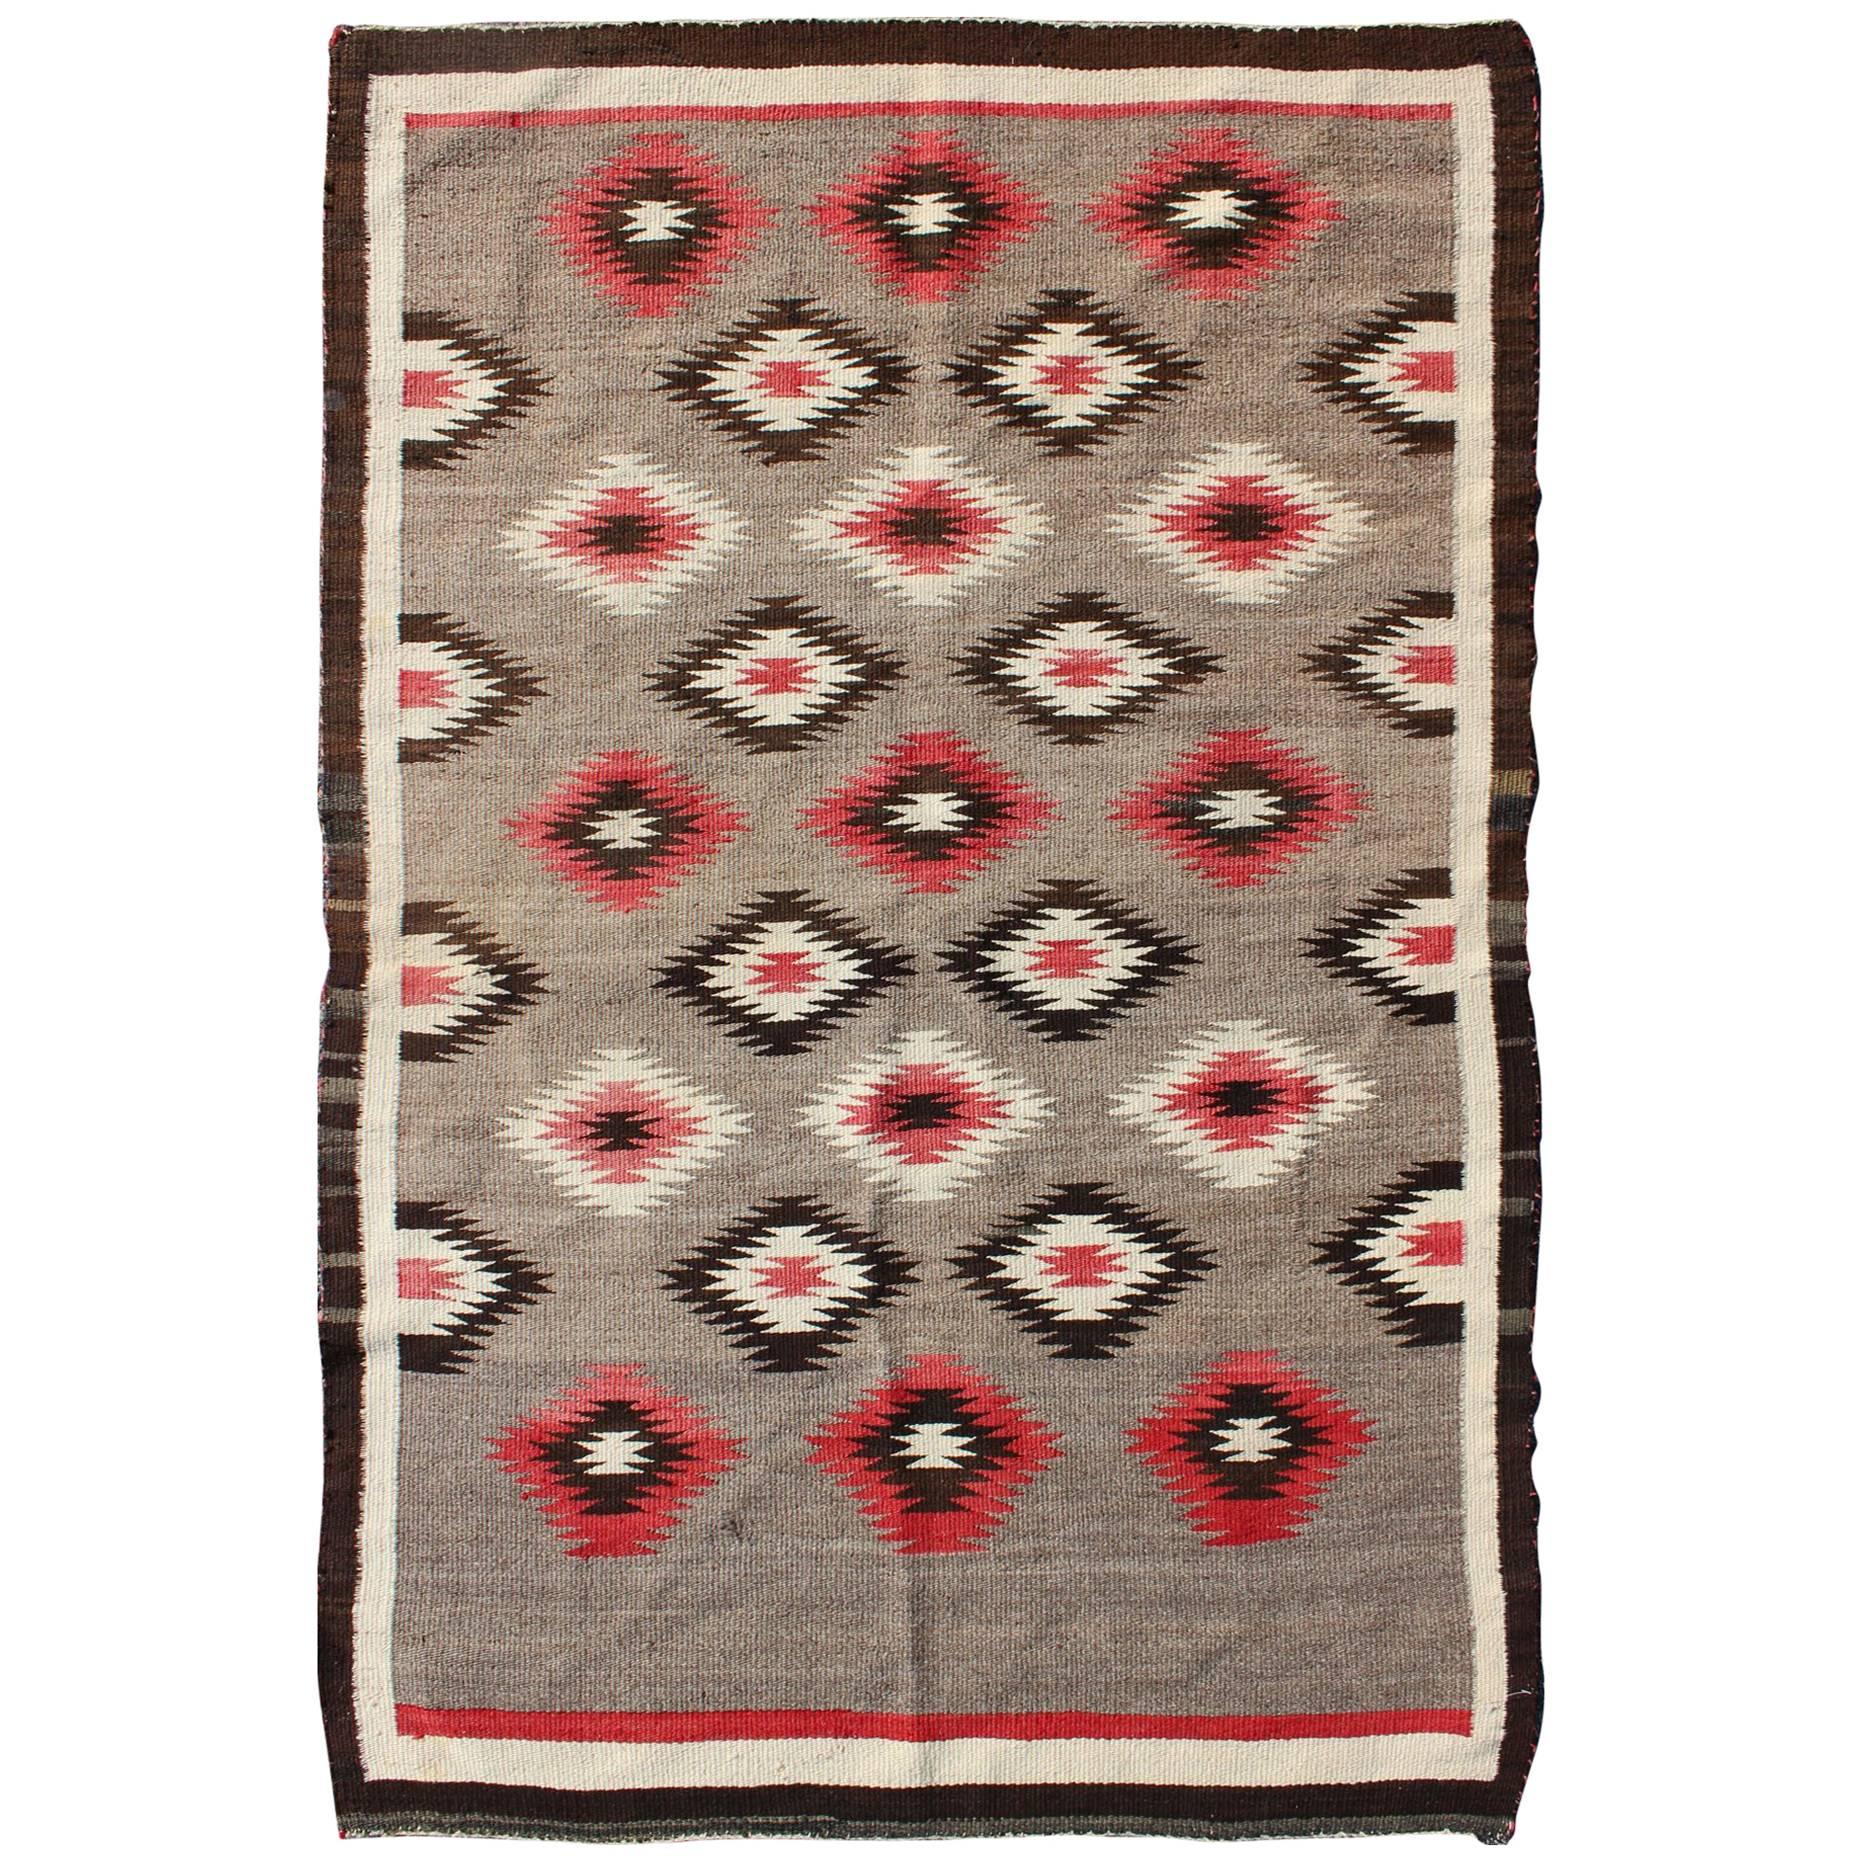 Amerikanischer Navajo-Teppich mit geometrischem All-Over-Design in Rot- und Brauntönen